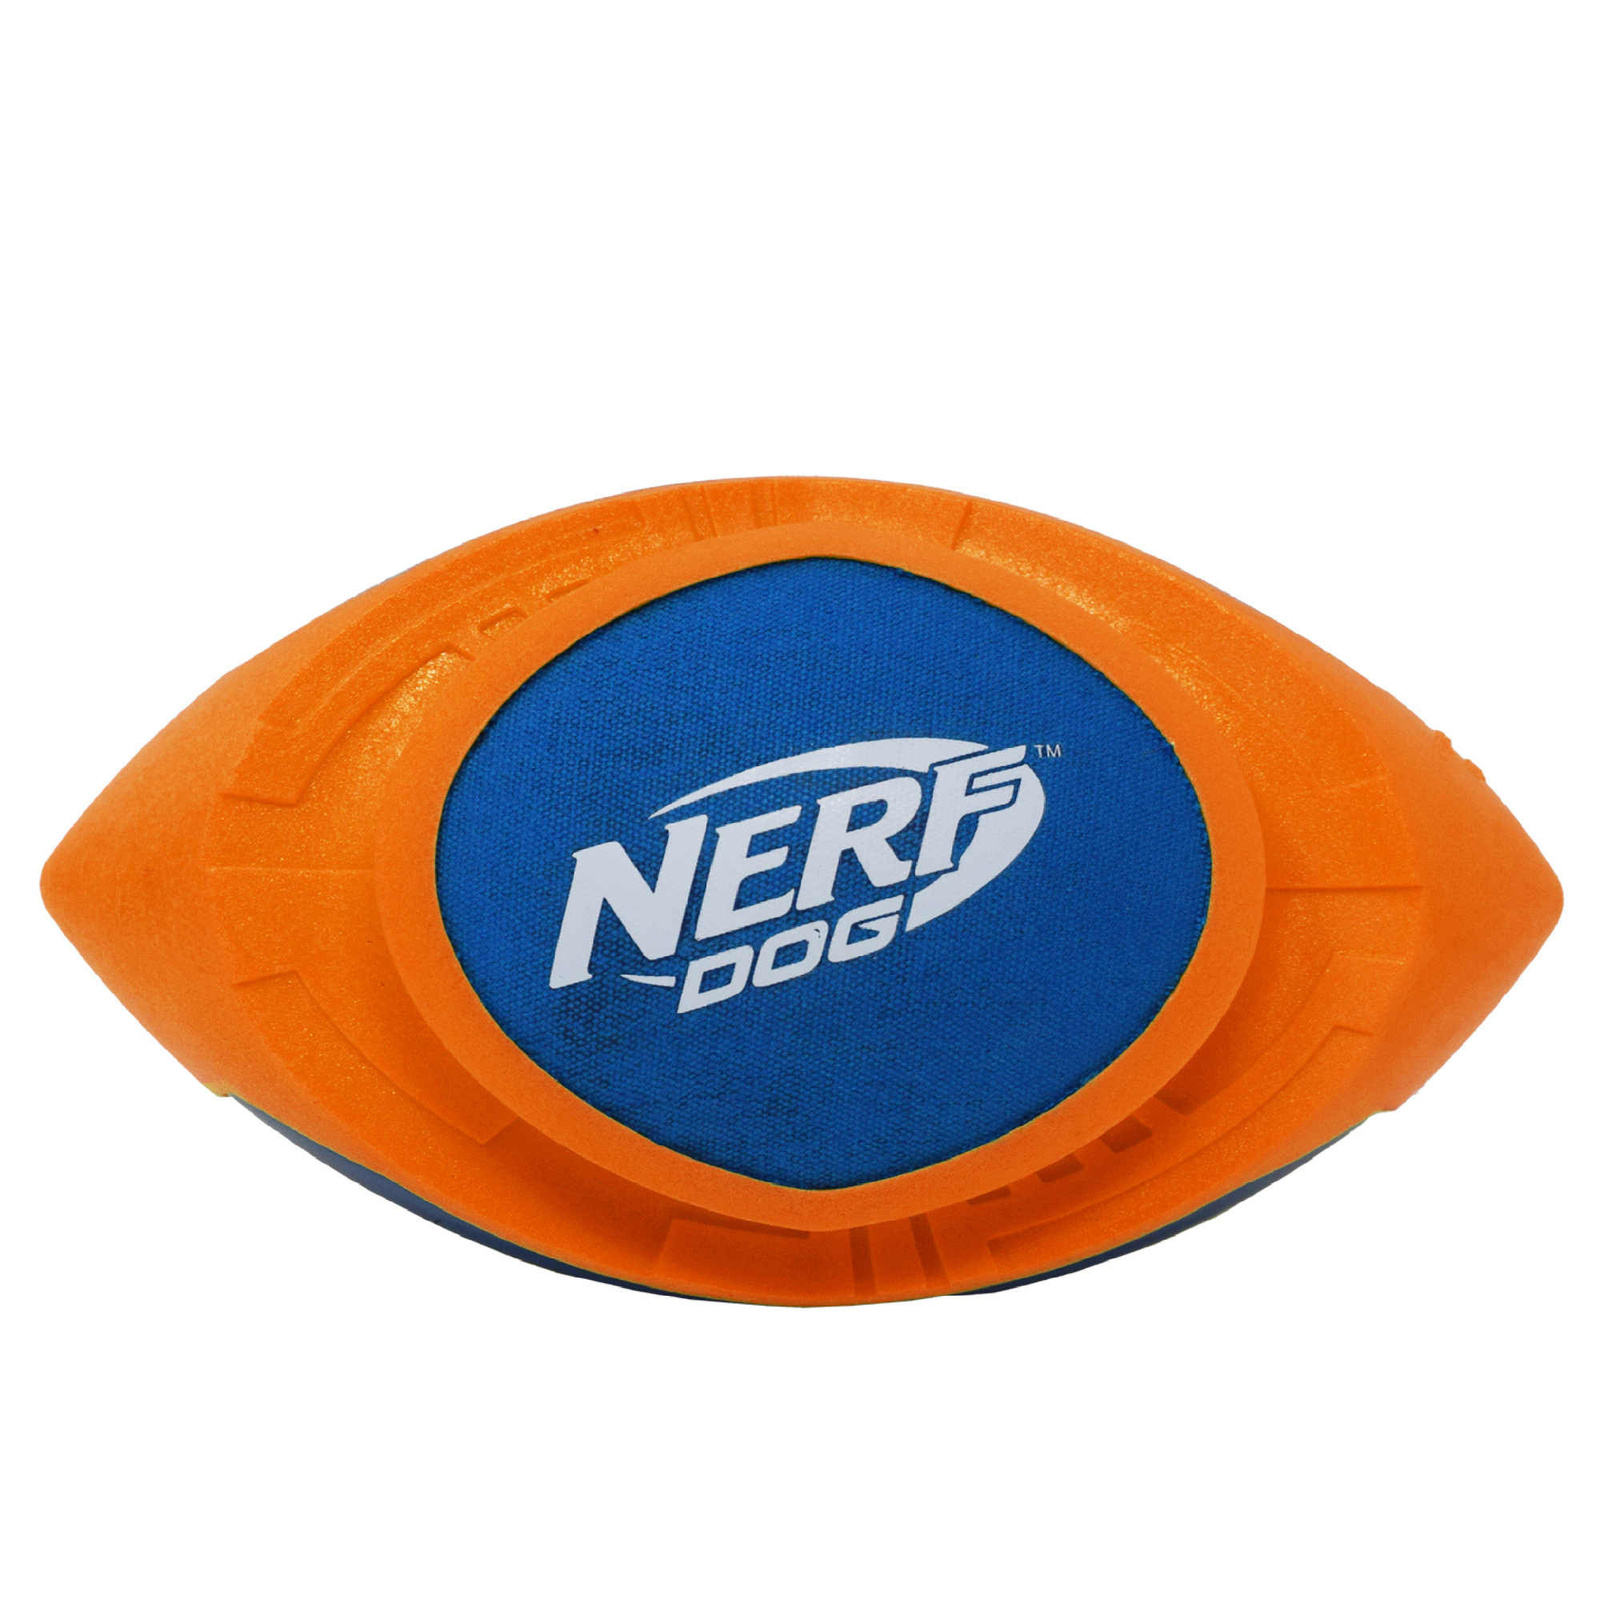 Nerf Nerf мяч для регби из вспененной резины и нейлона, 18 см (серия Мегатон), (синий/оранжевый) (263 г) nerf nerf снаряд из вспененной резины и нейлона 30 см серия мегатон синий зеленый 245 г